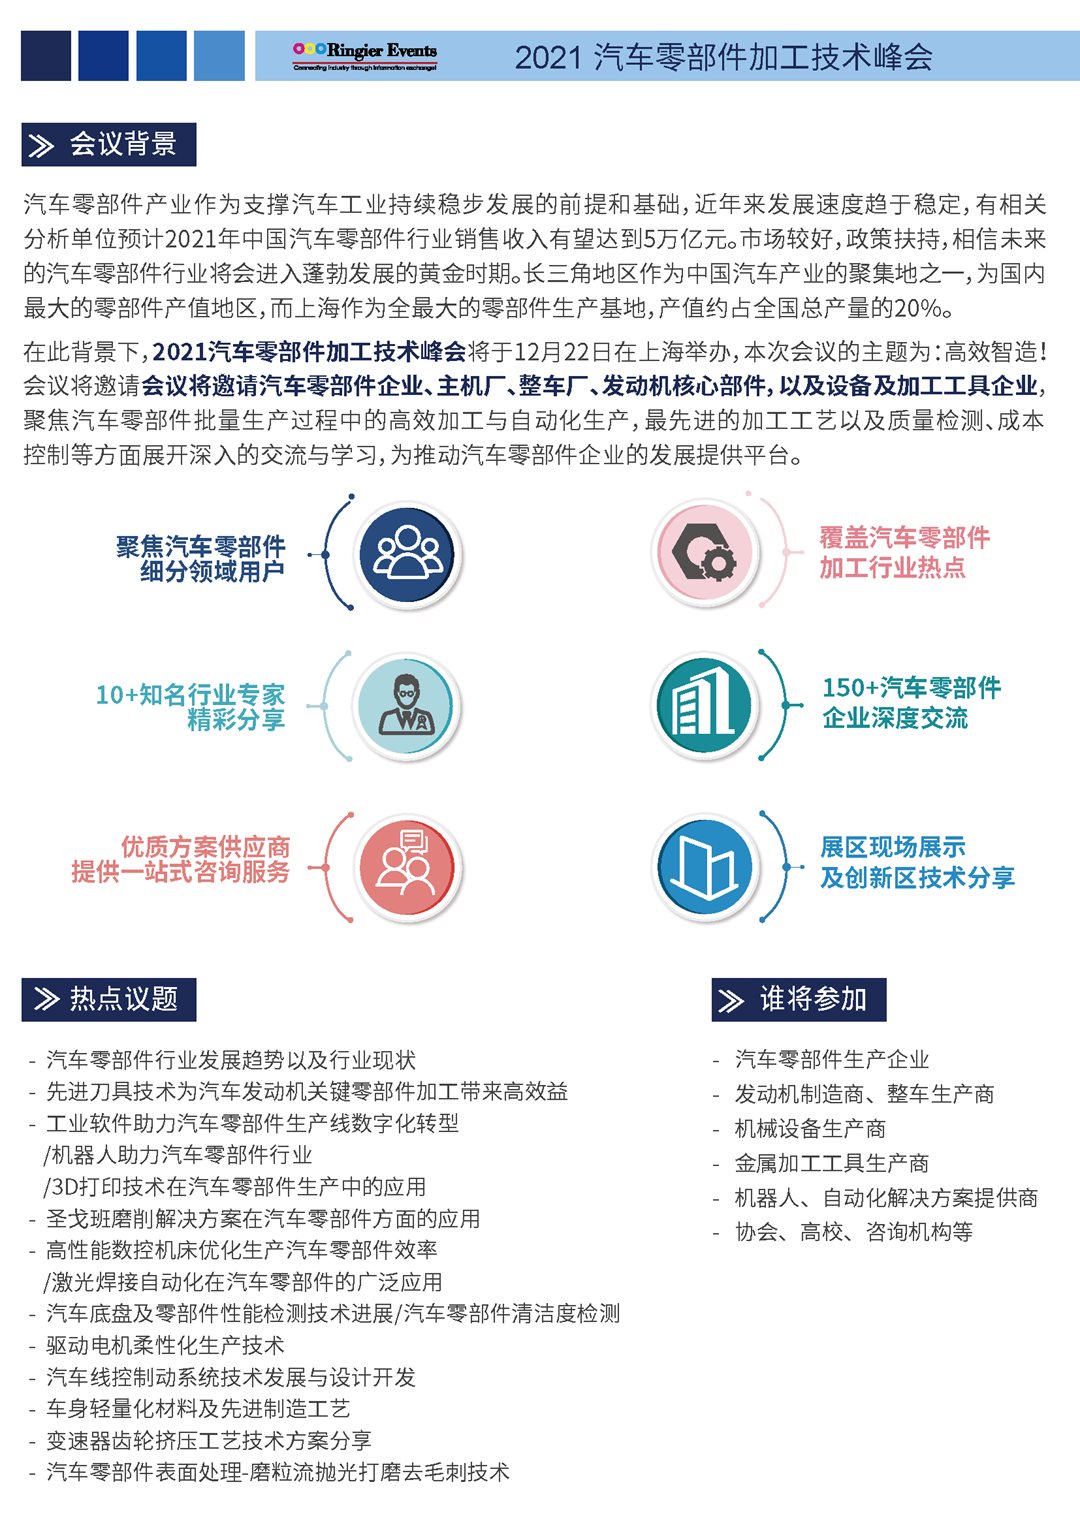 2021汽车零部件加工技术峰会-中文资料_页面_2.png